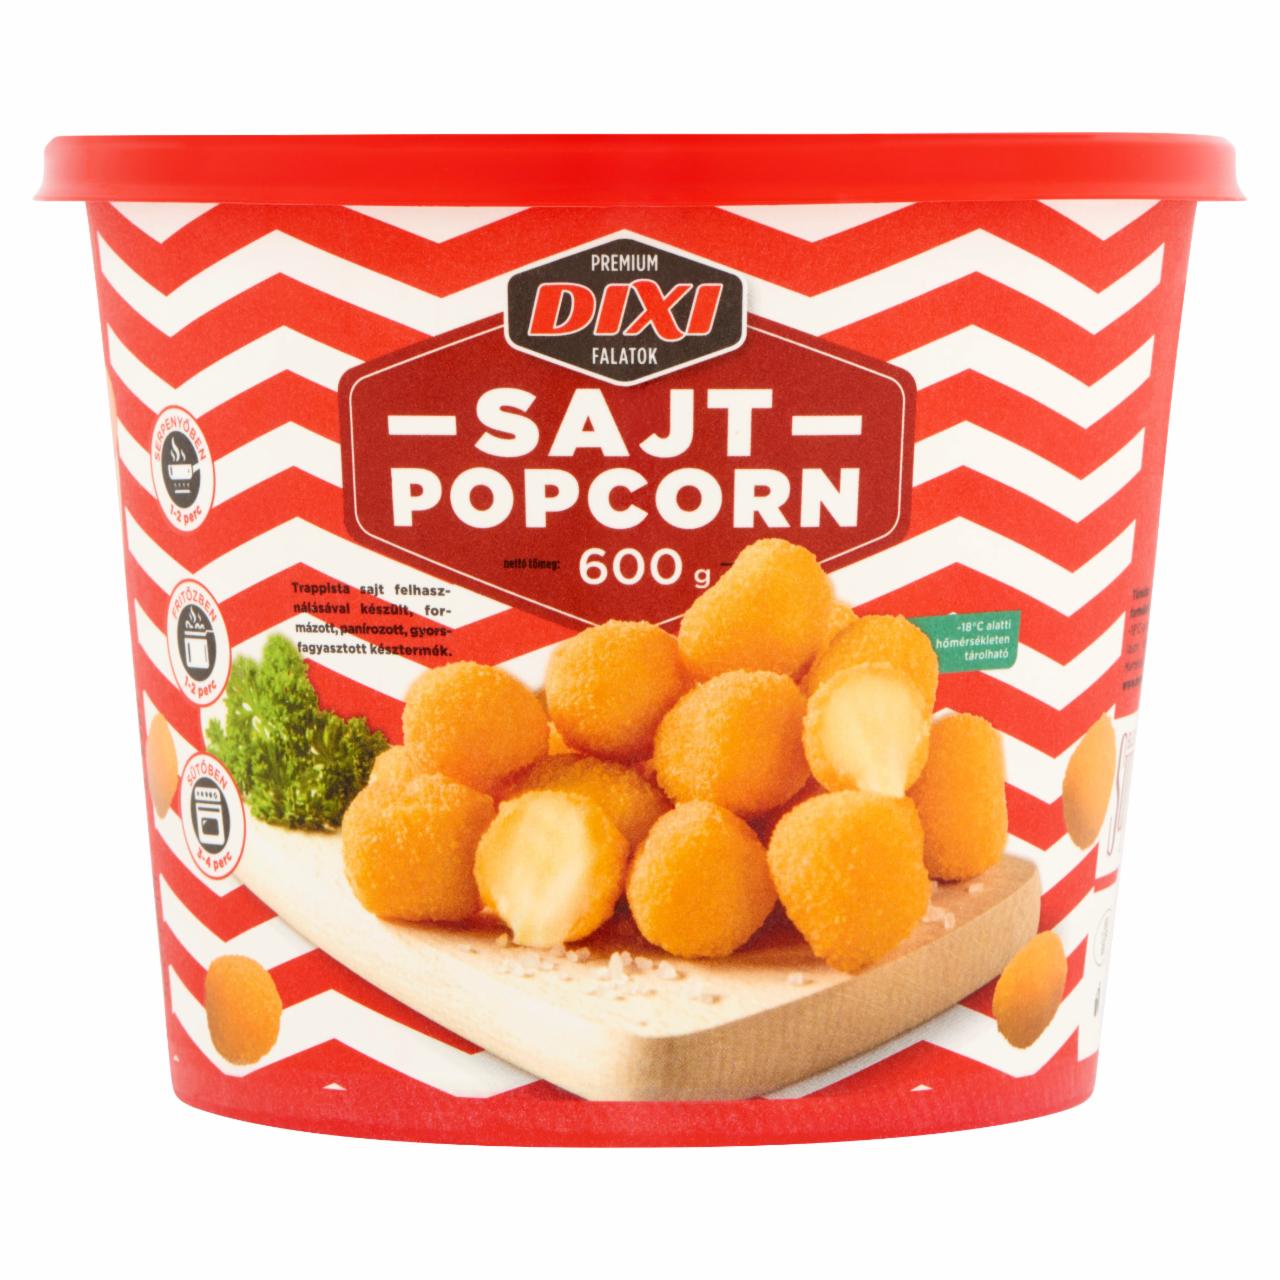 Képek - Dixi Prémium Falatok gyorsfagyasztott sajt popcorn 600 g